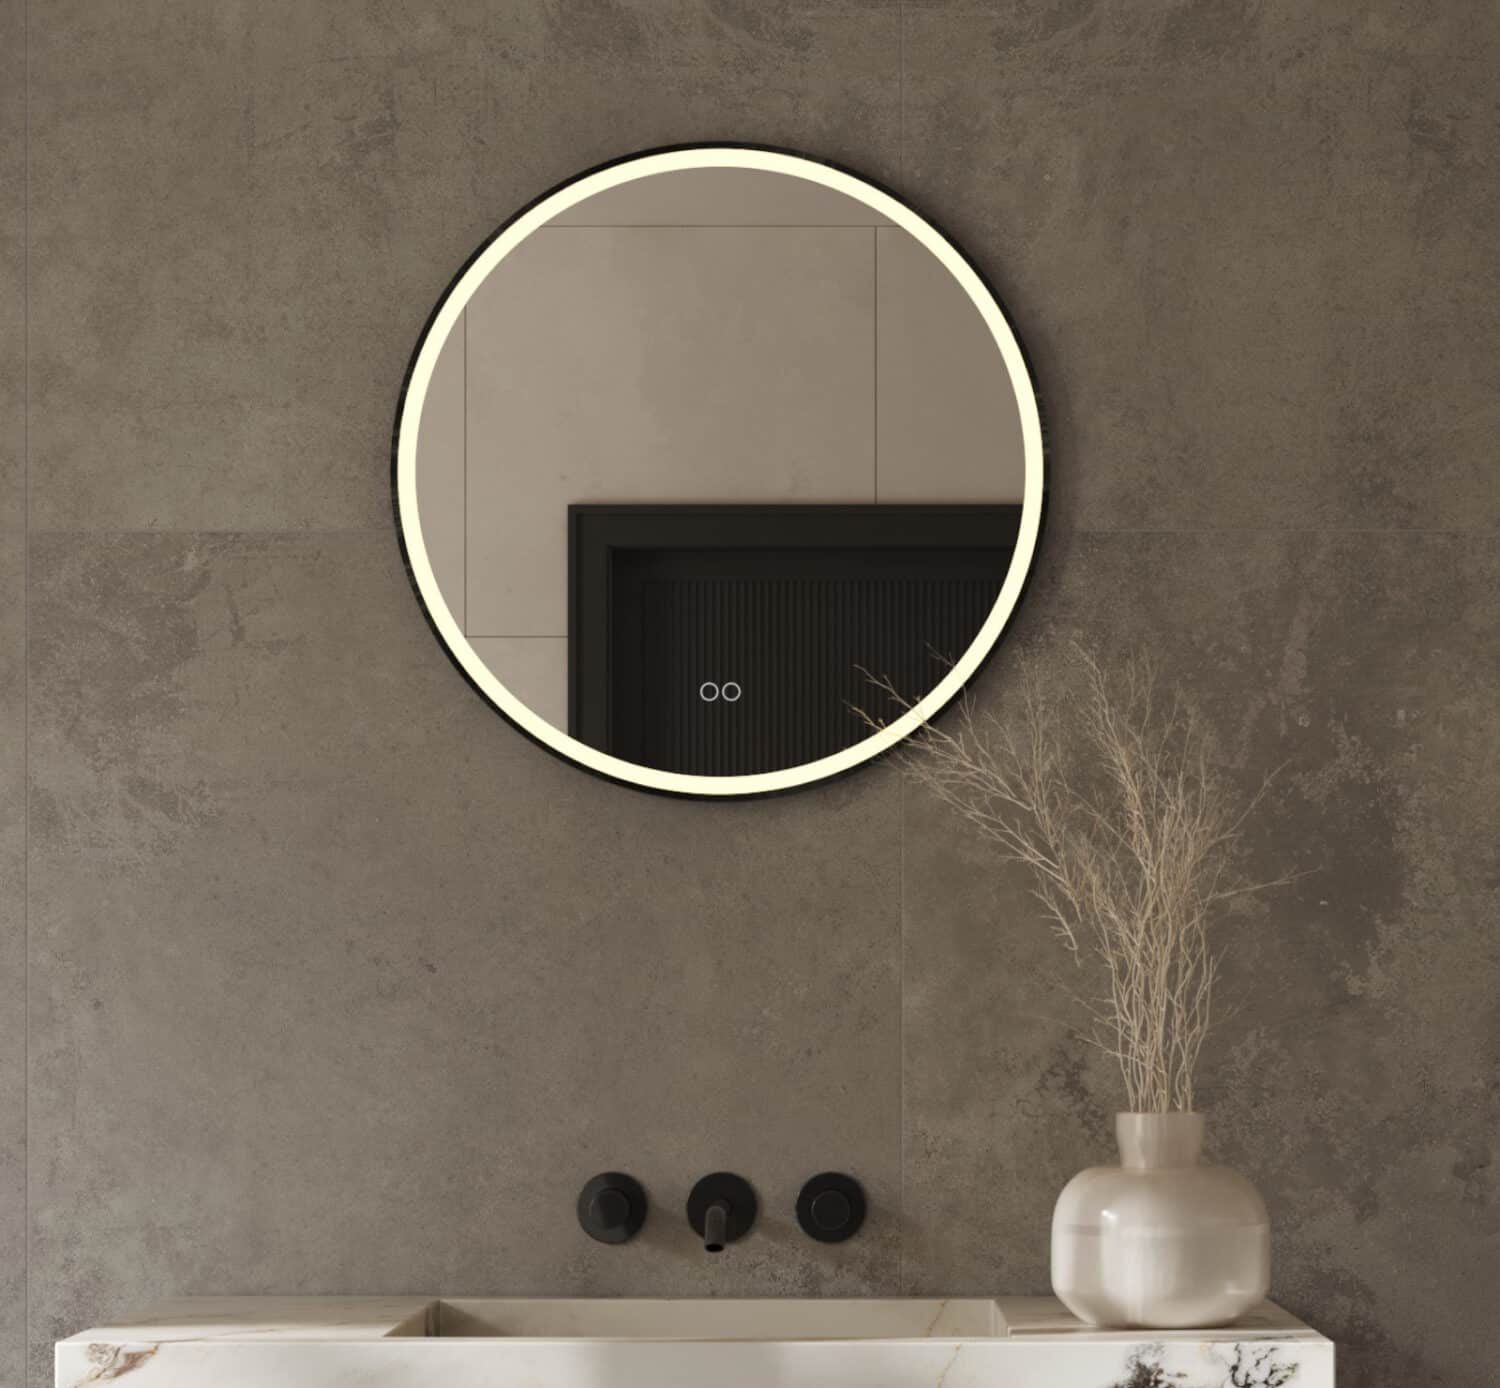 Stijlvolle 60 cm ronde spiegel, uitgevoerd met een mat zwarte frame, verlichting, spiegelverwarming en een dubbele touch schakelaar